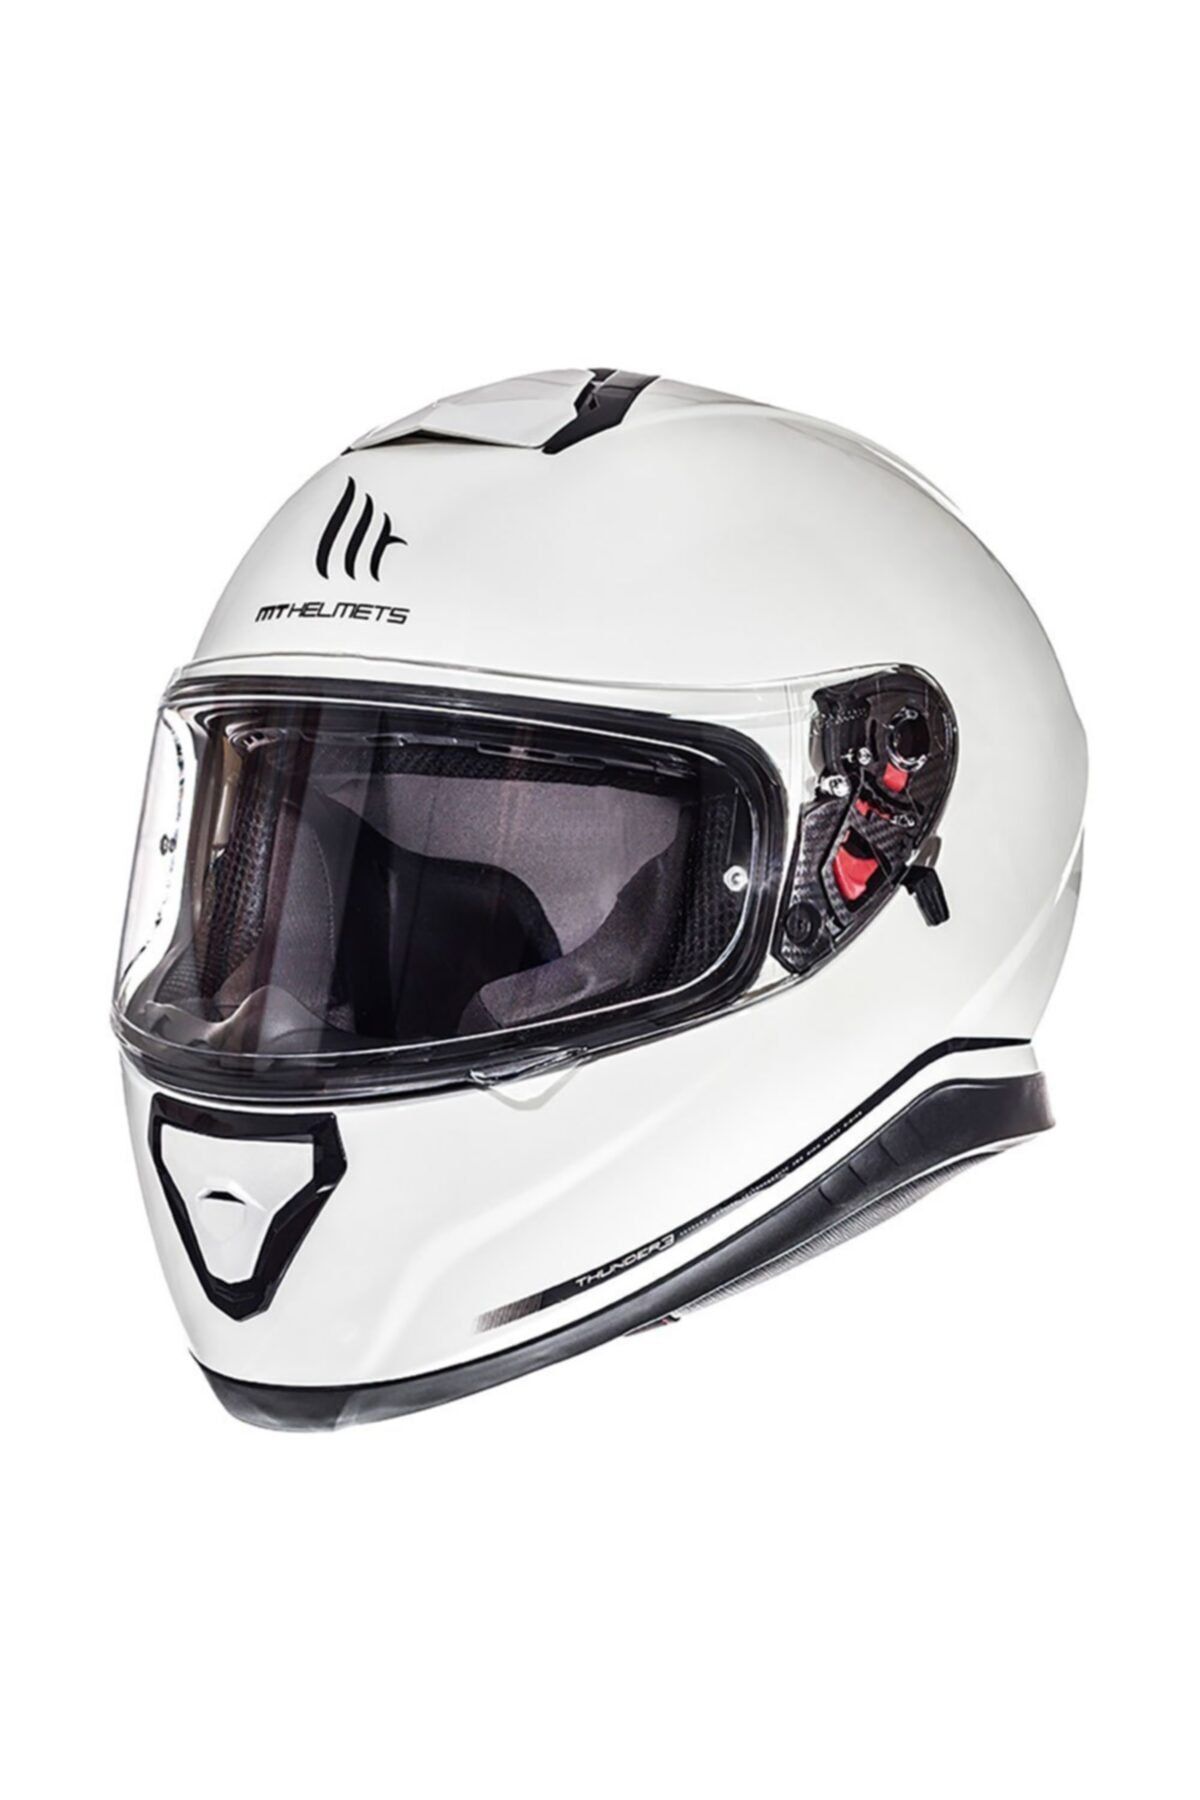 MT Helmets Thunder 3 Sv Solid Full Face Helmet